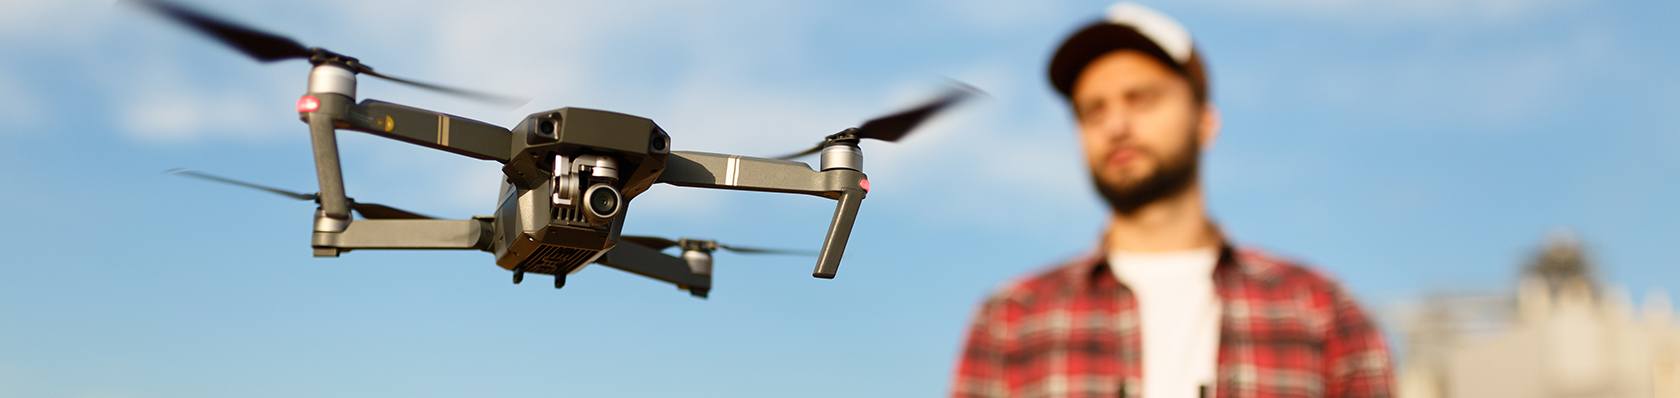 Comment choisir son drone Parrot : Bebop2 ou Anafi ?